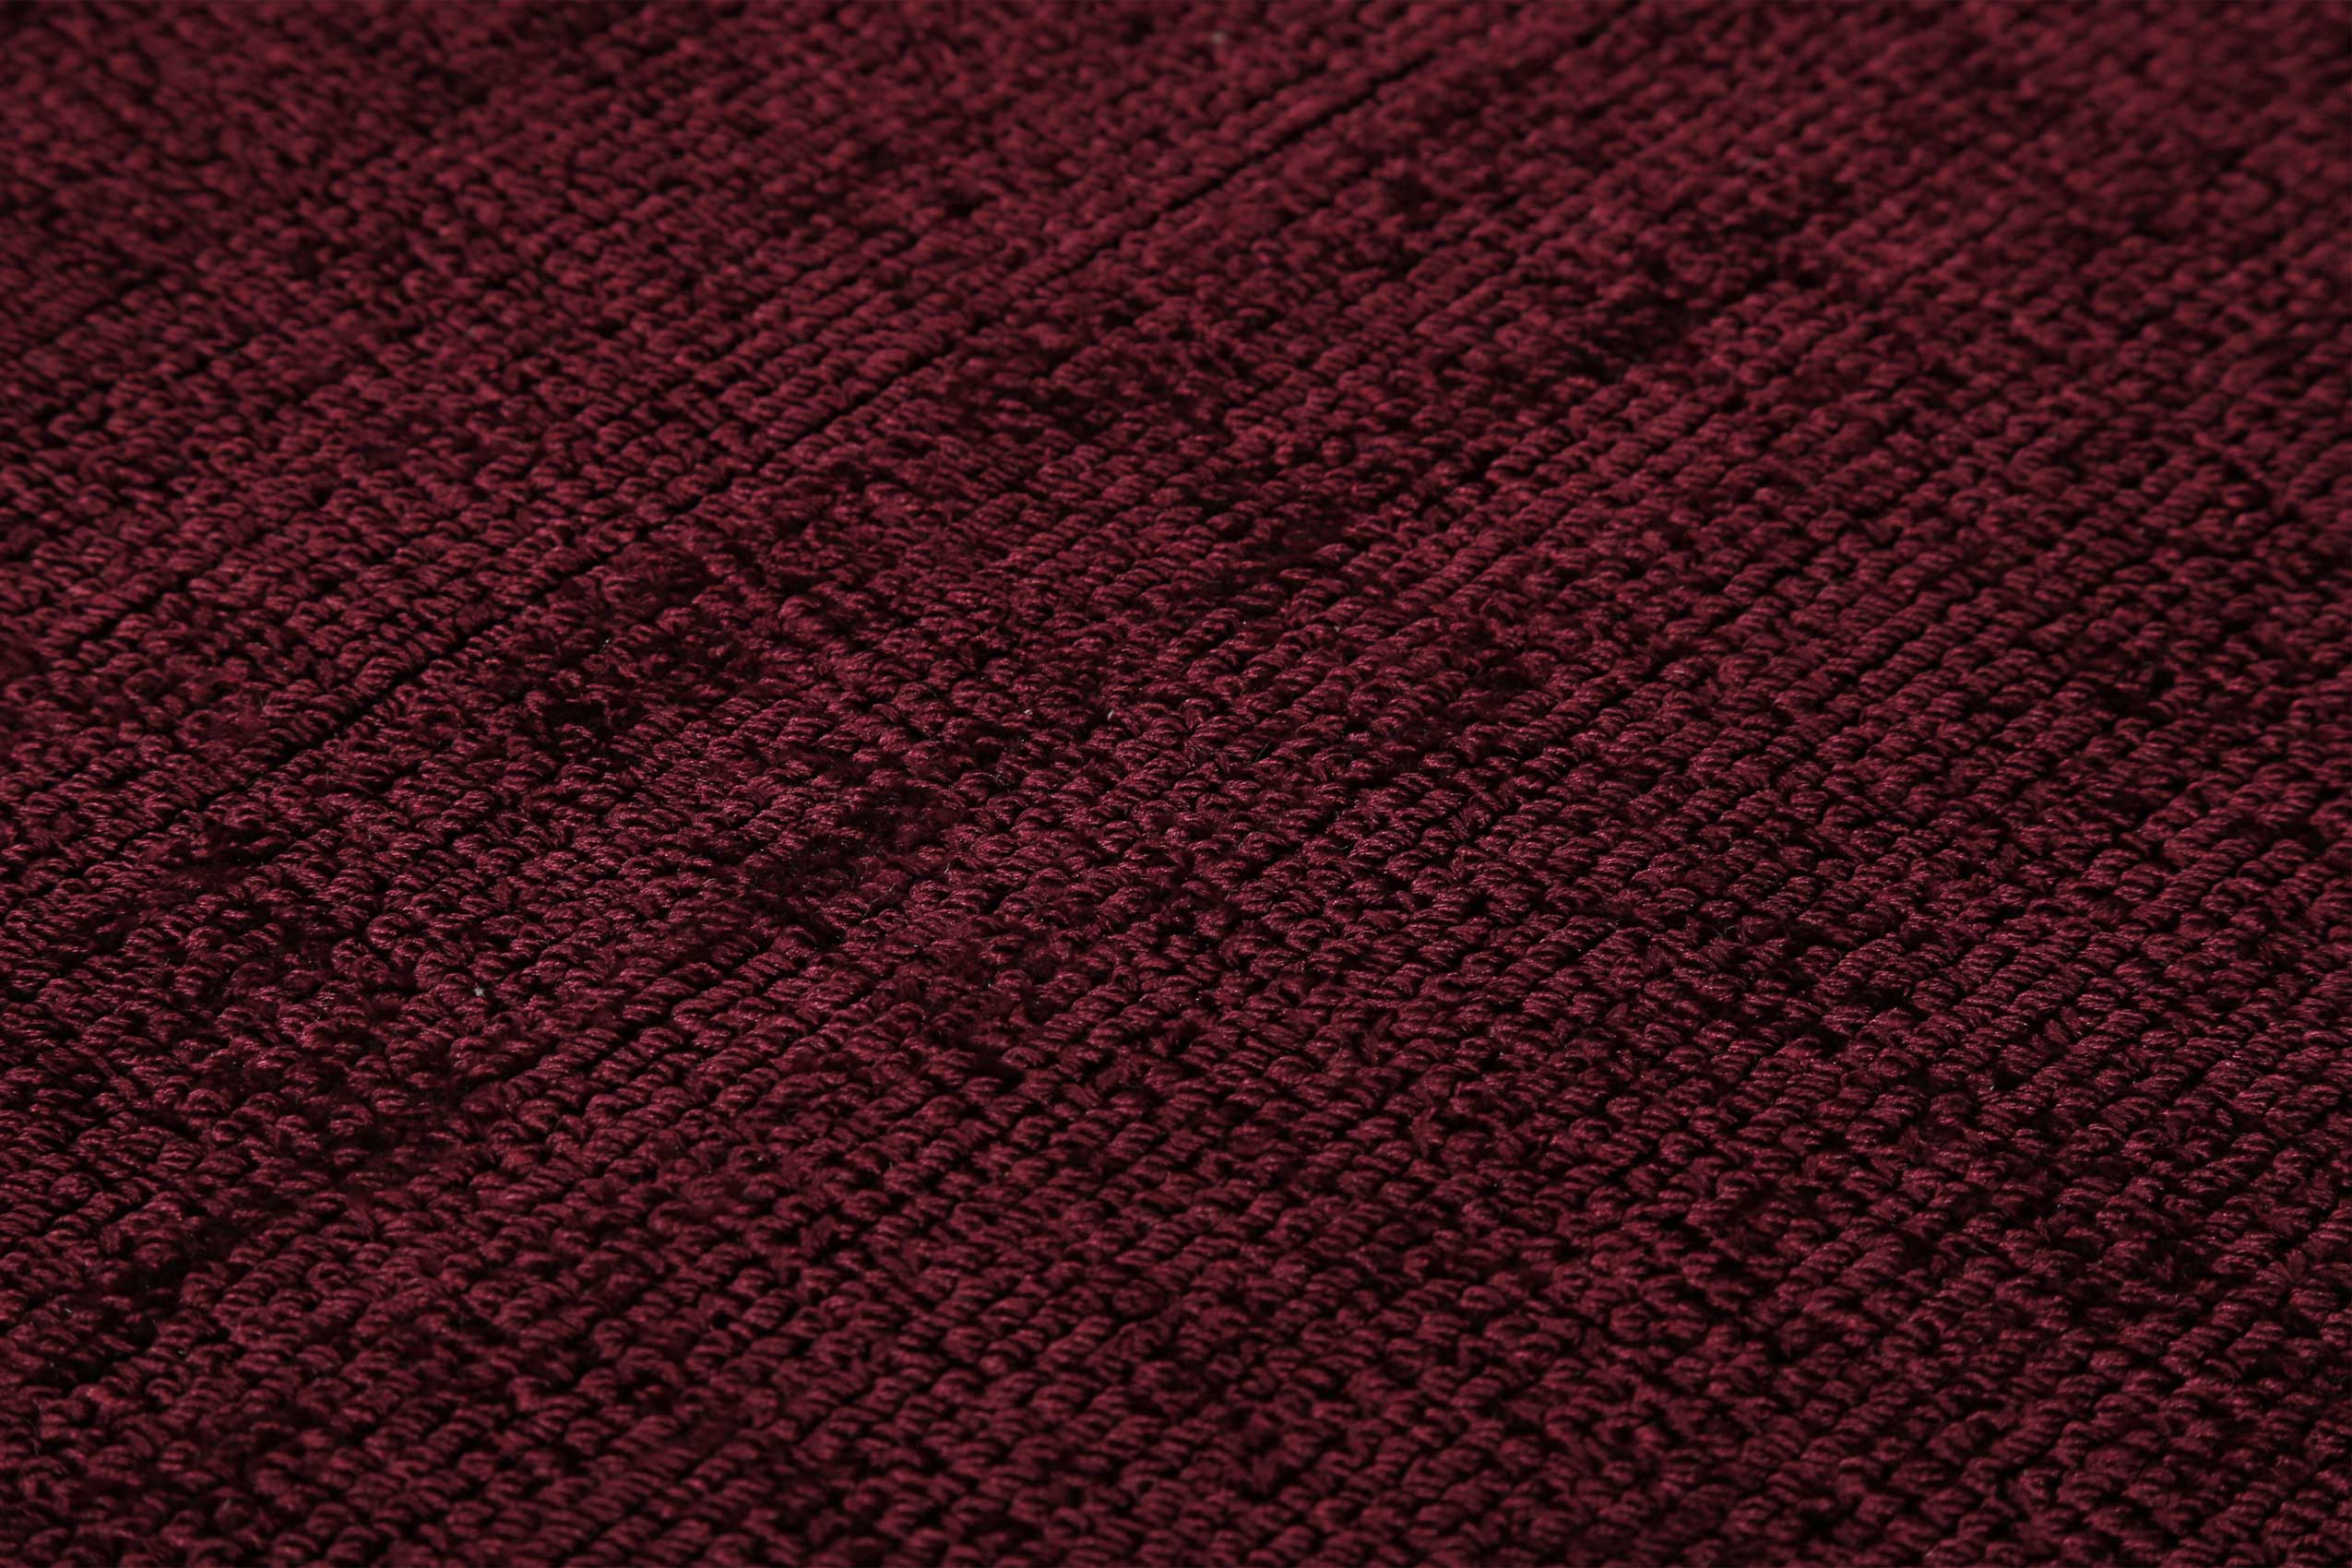 Esprit Kurzflor Teppich Rund Bordeaux Rot » Gil « - Ansicht 5